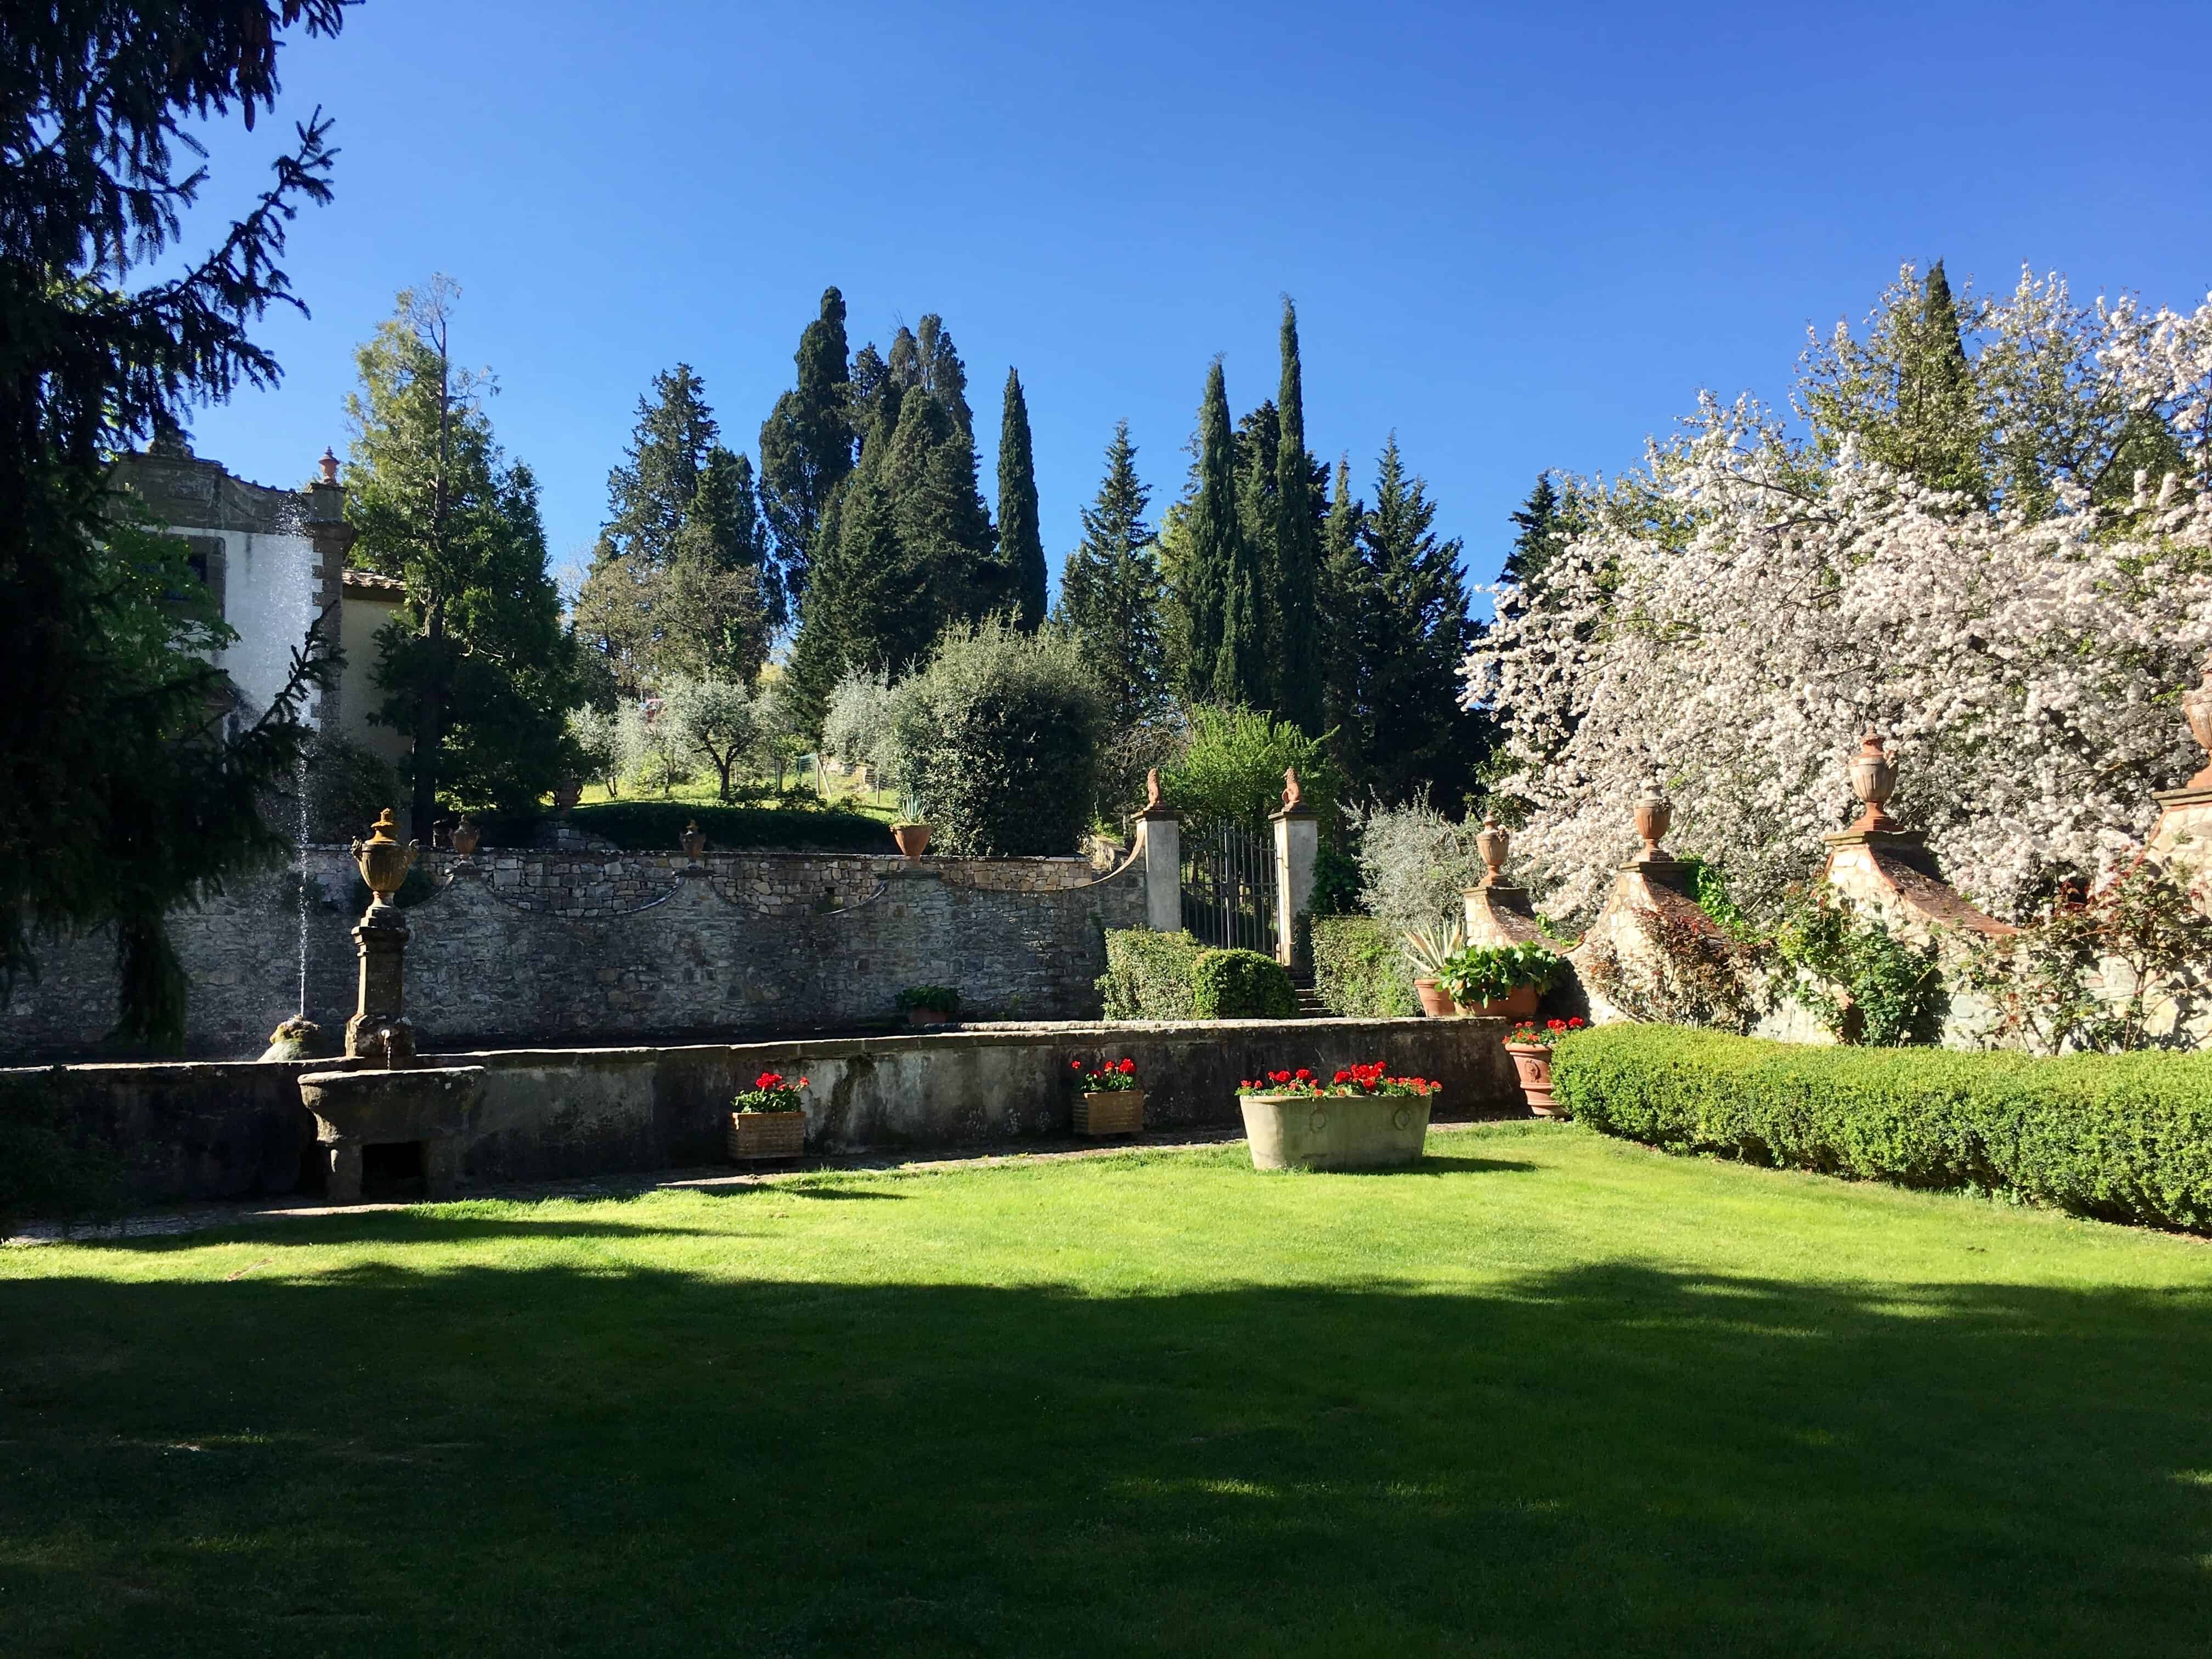 Grounds of Castello di Verrazzano in Chianti, Italy